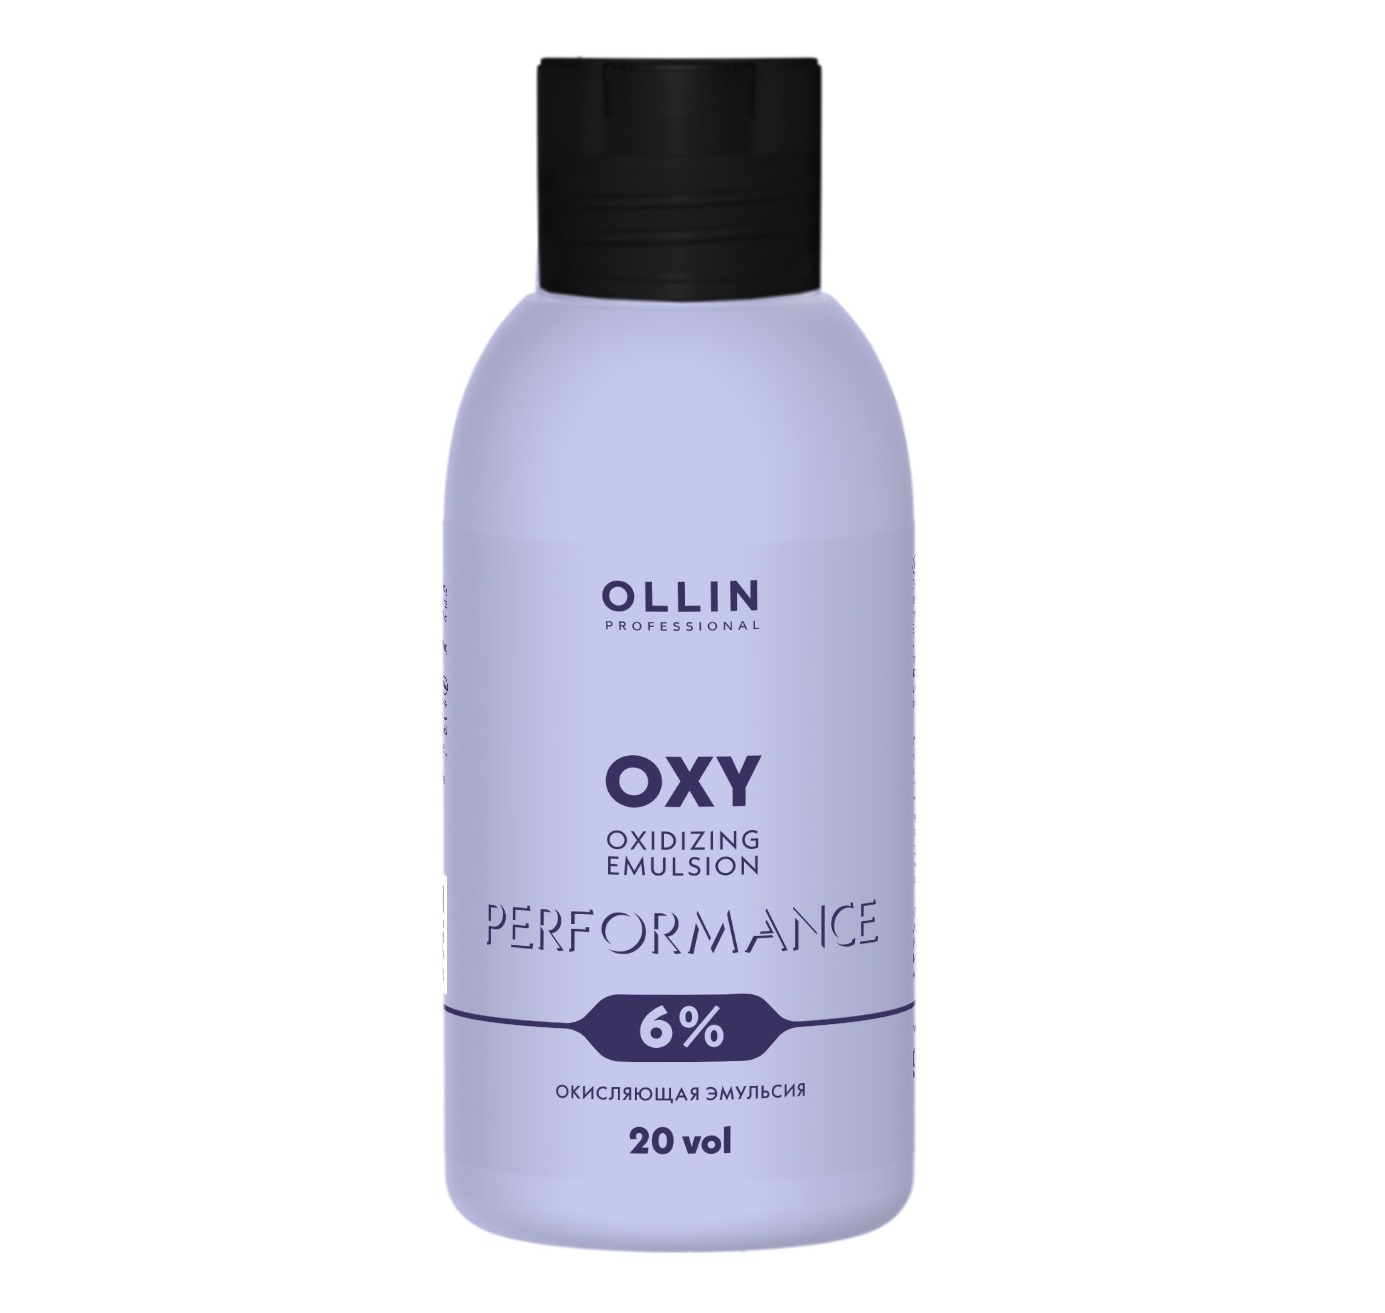 Ollin Professional Окисляющая эмульсия 6% 20 vol, 90 мл (Ollin Professional, Performance) haikyu vol 5